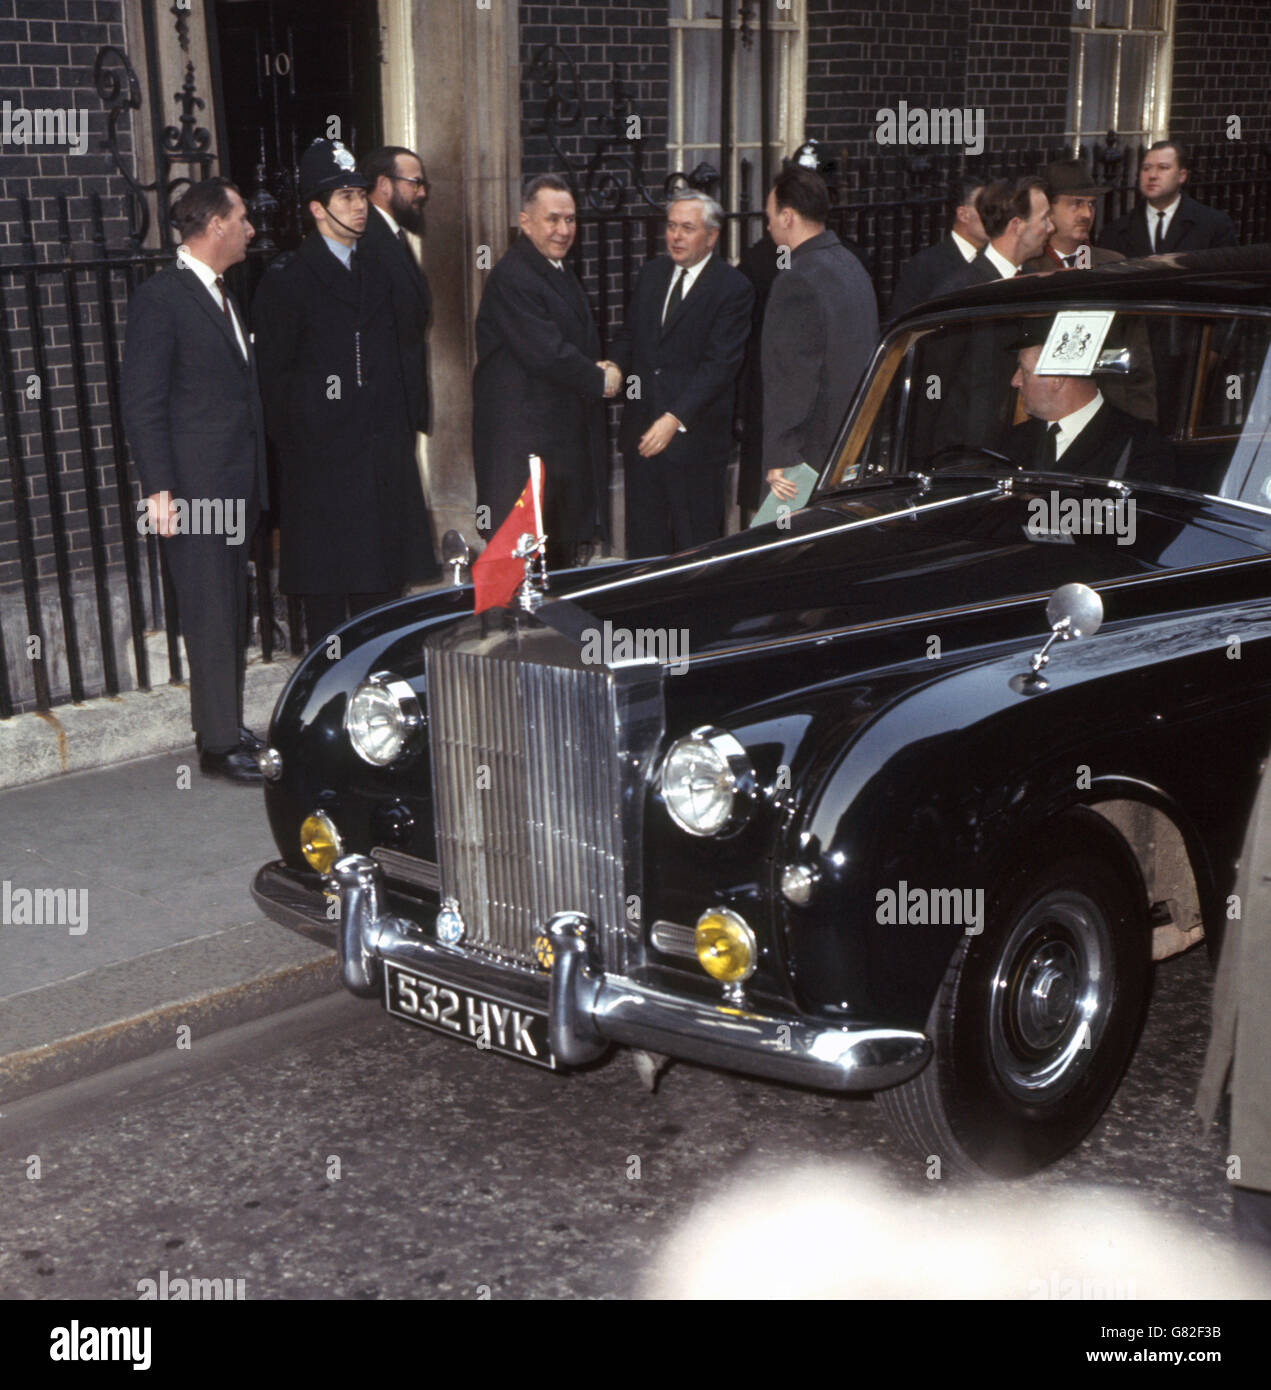 Il primo ministro Harold Wilson condivide le mani con il primo ministro sovietico Alexei Kosygin quando arriva a 10 Downing Street per una conferenza. Foto Stock